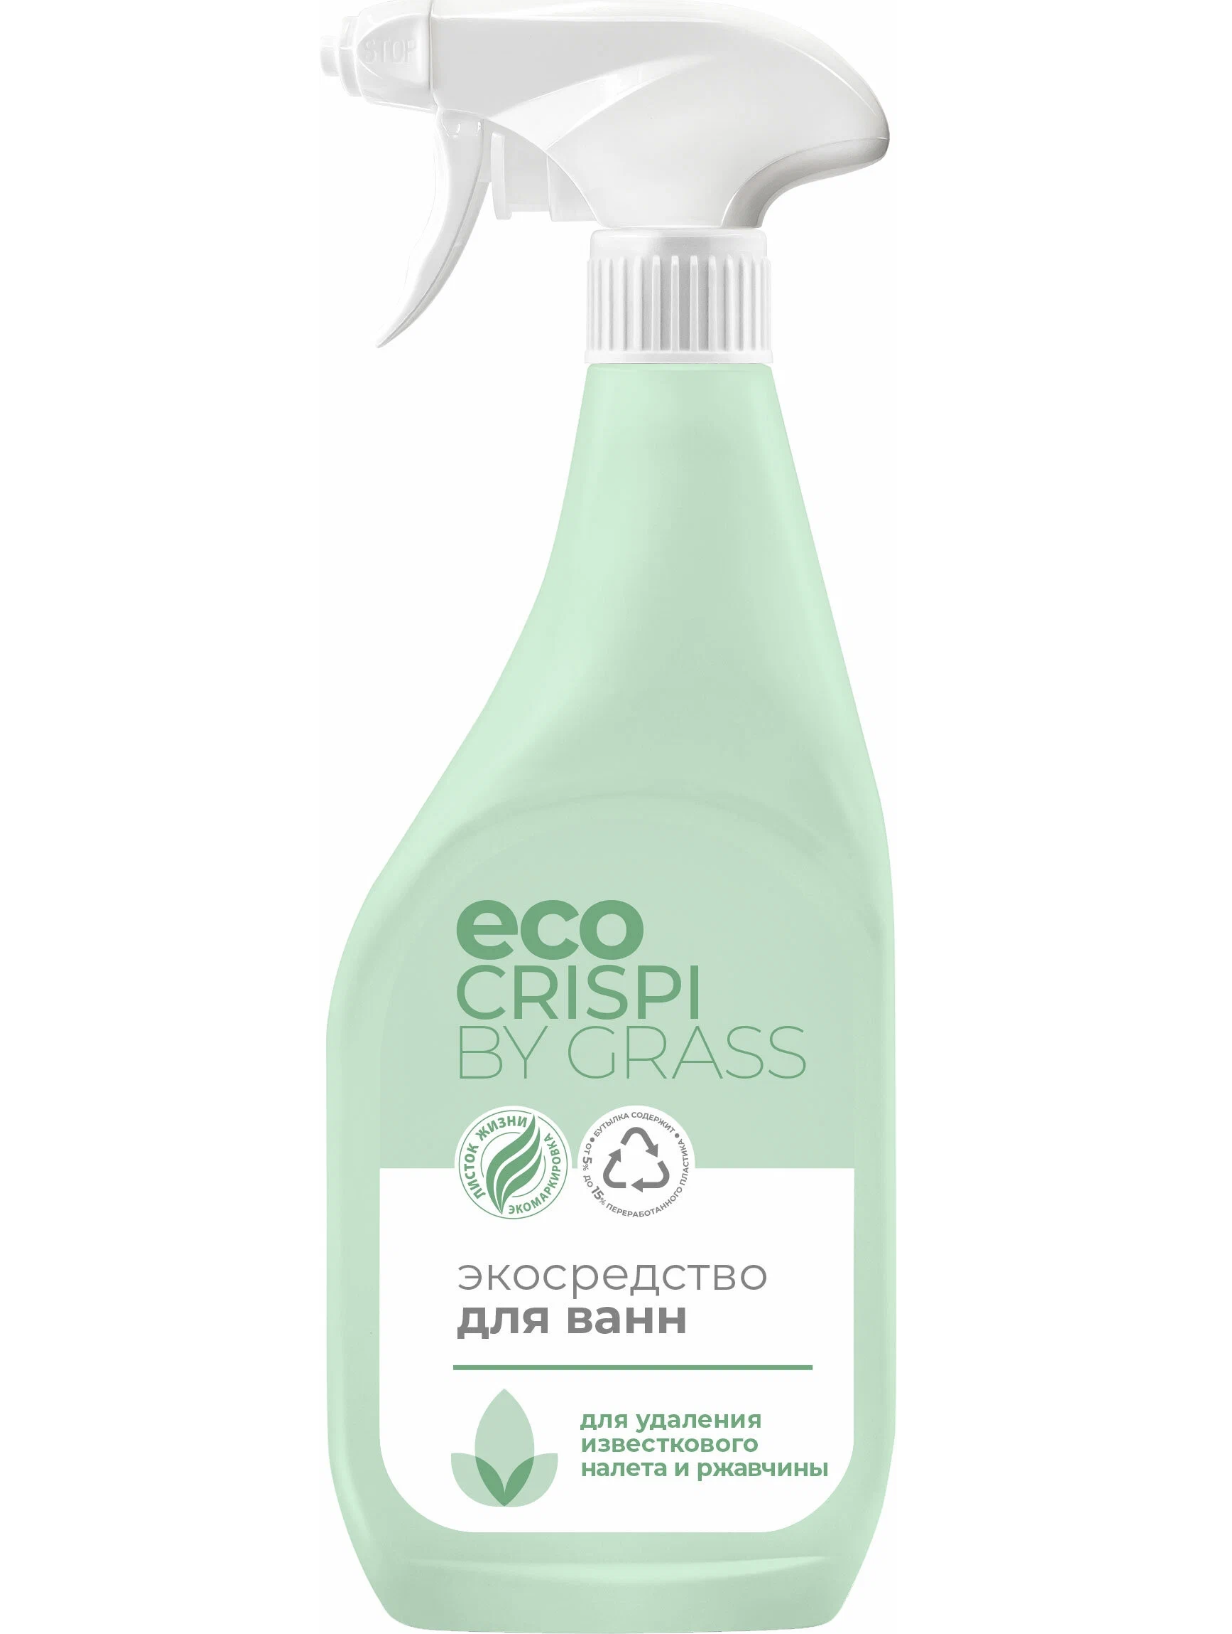   / Grass Eco Crispi -       600 